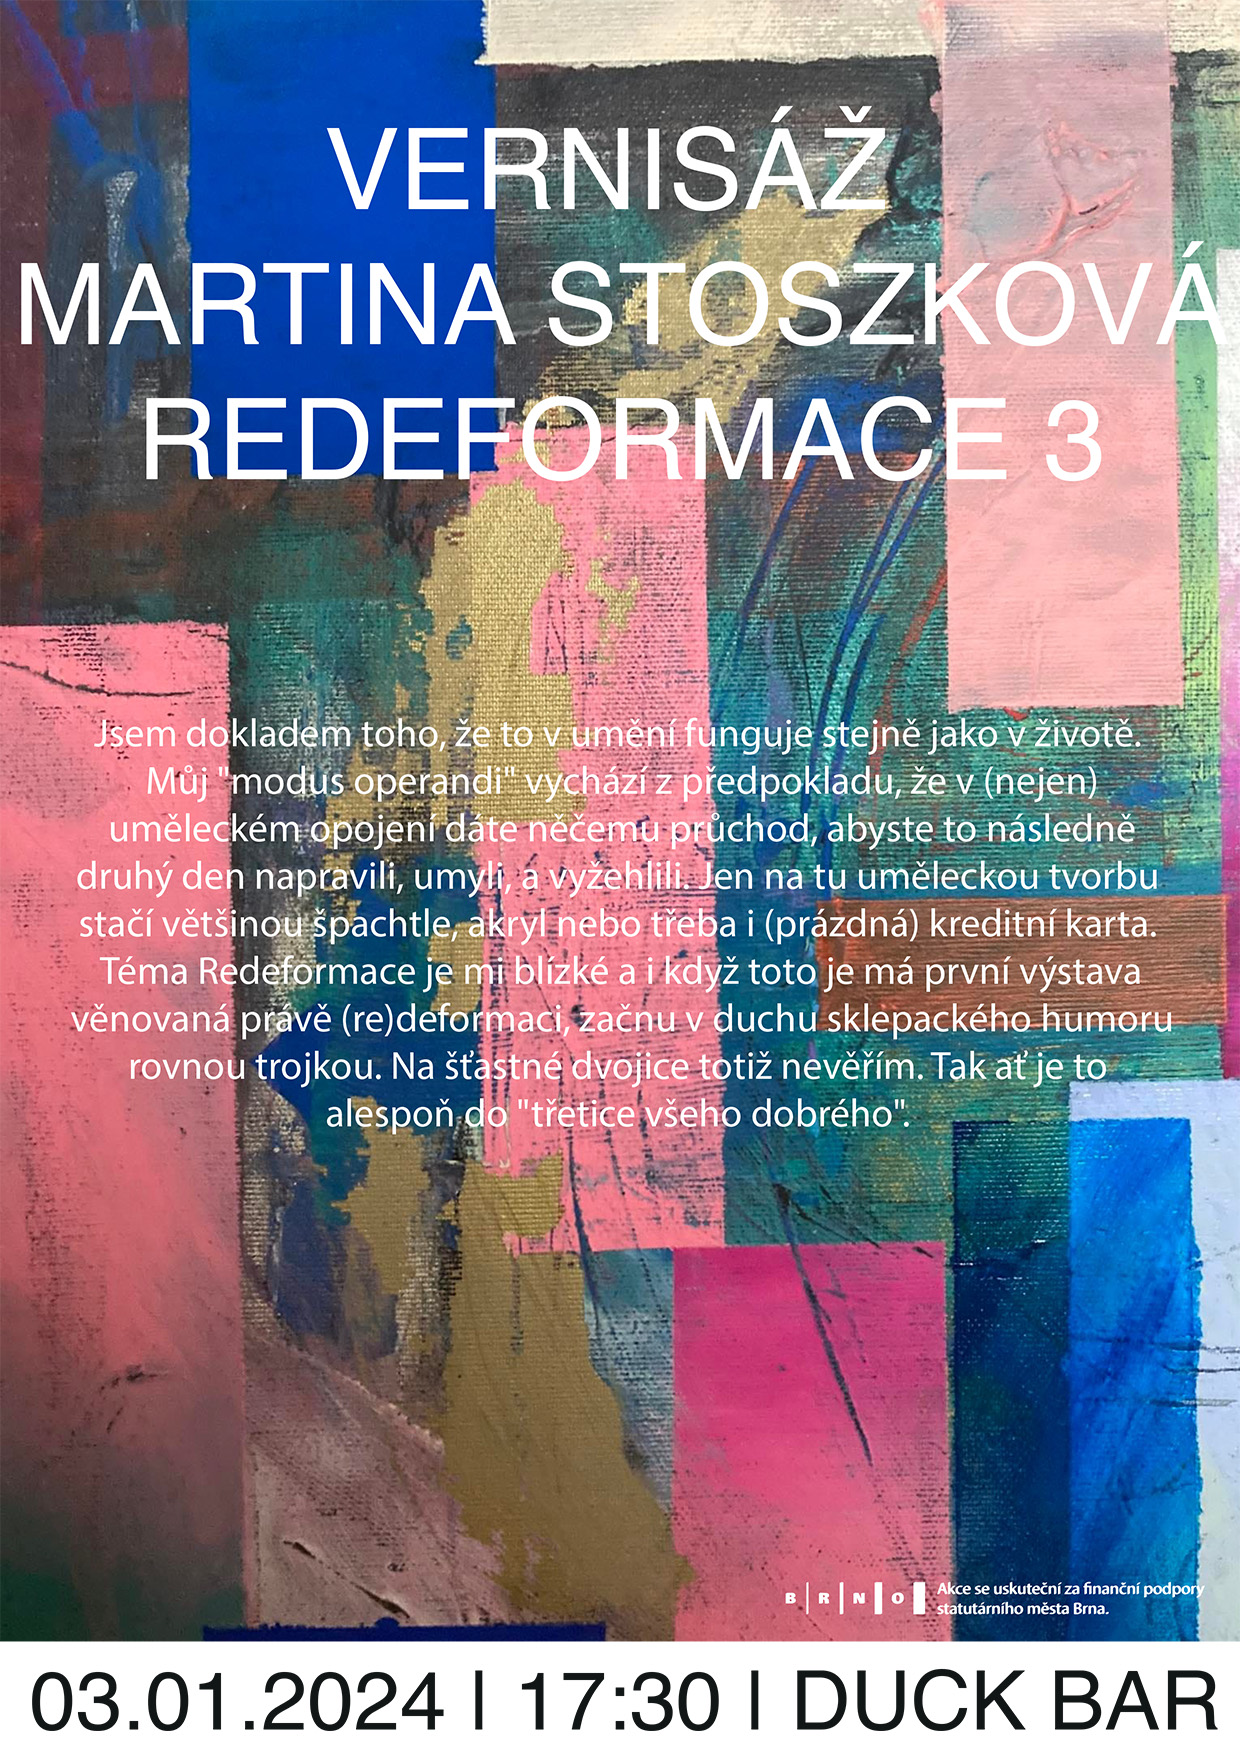 Martina Stoszková - Redeformace 3